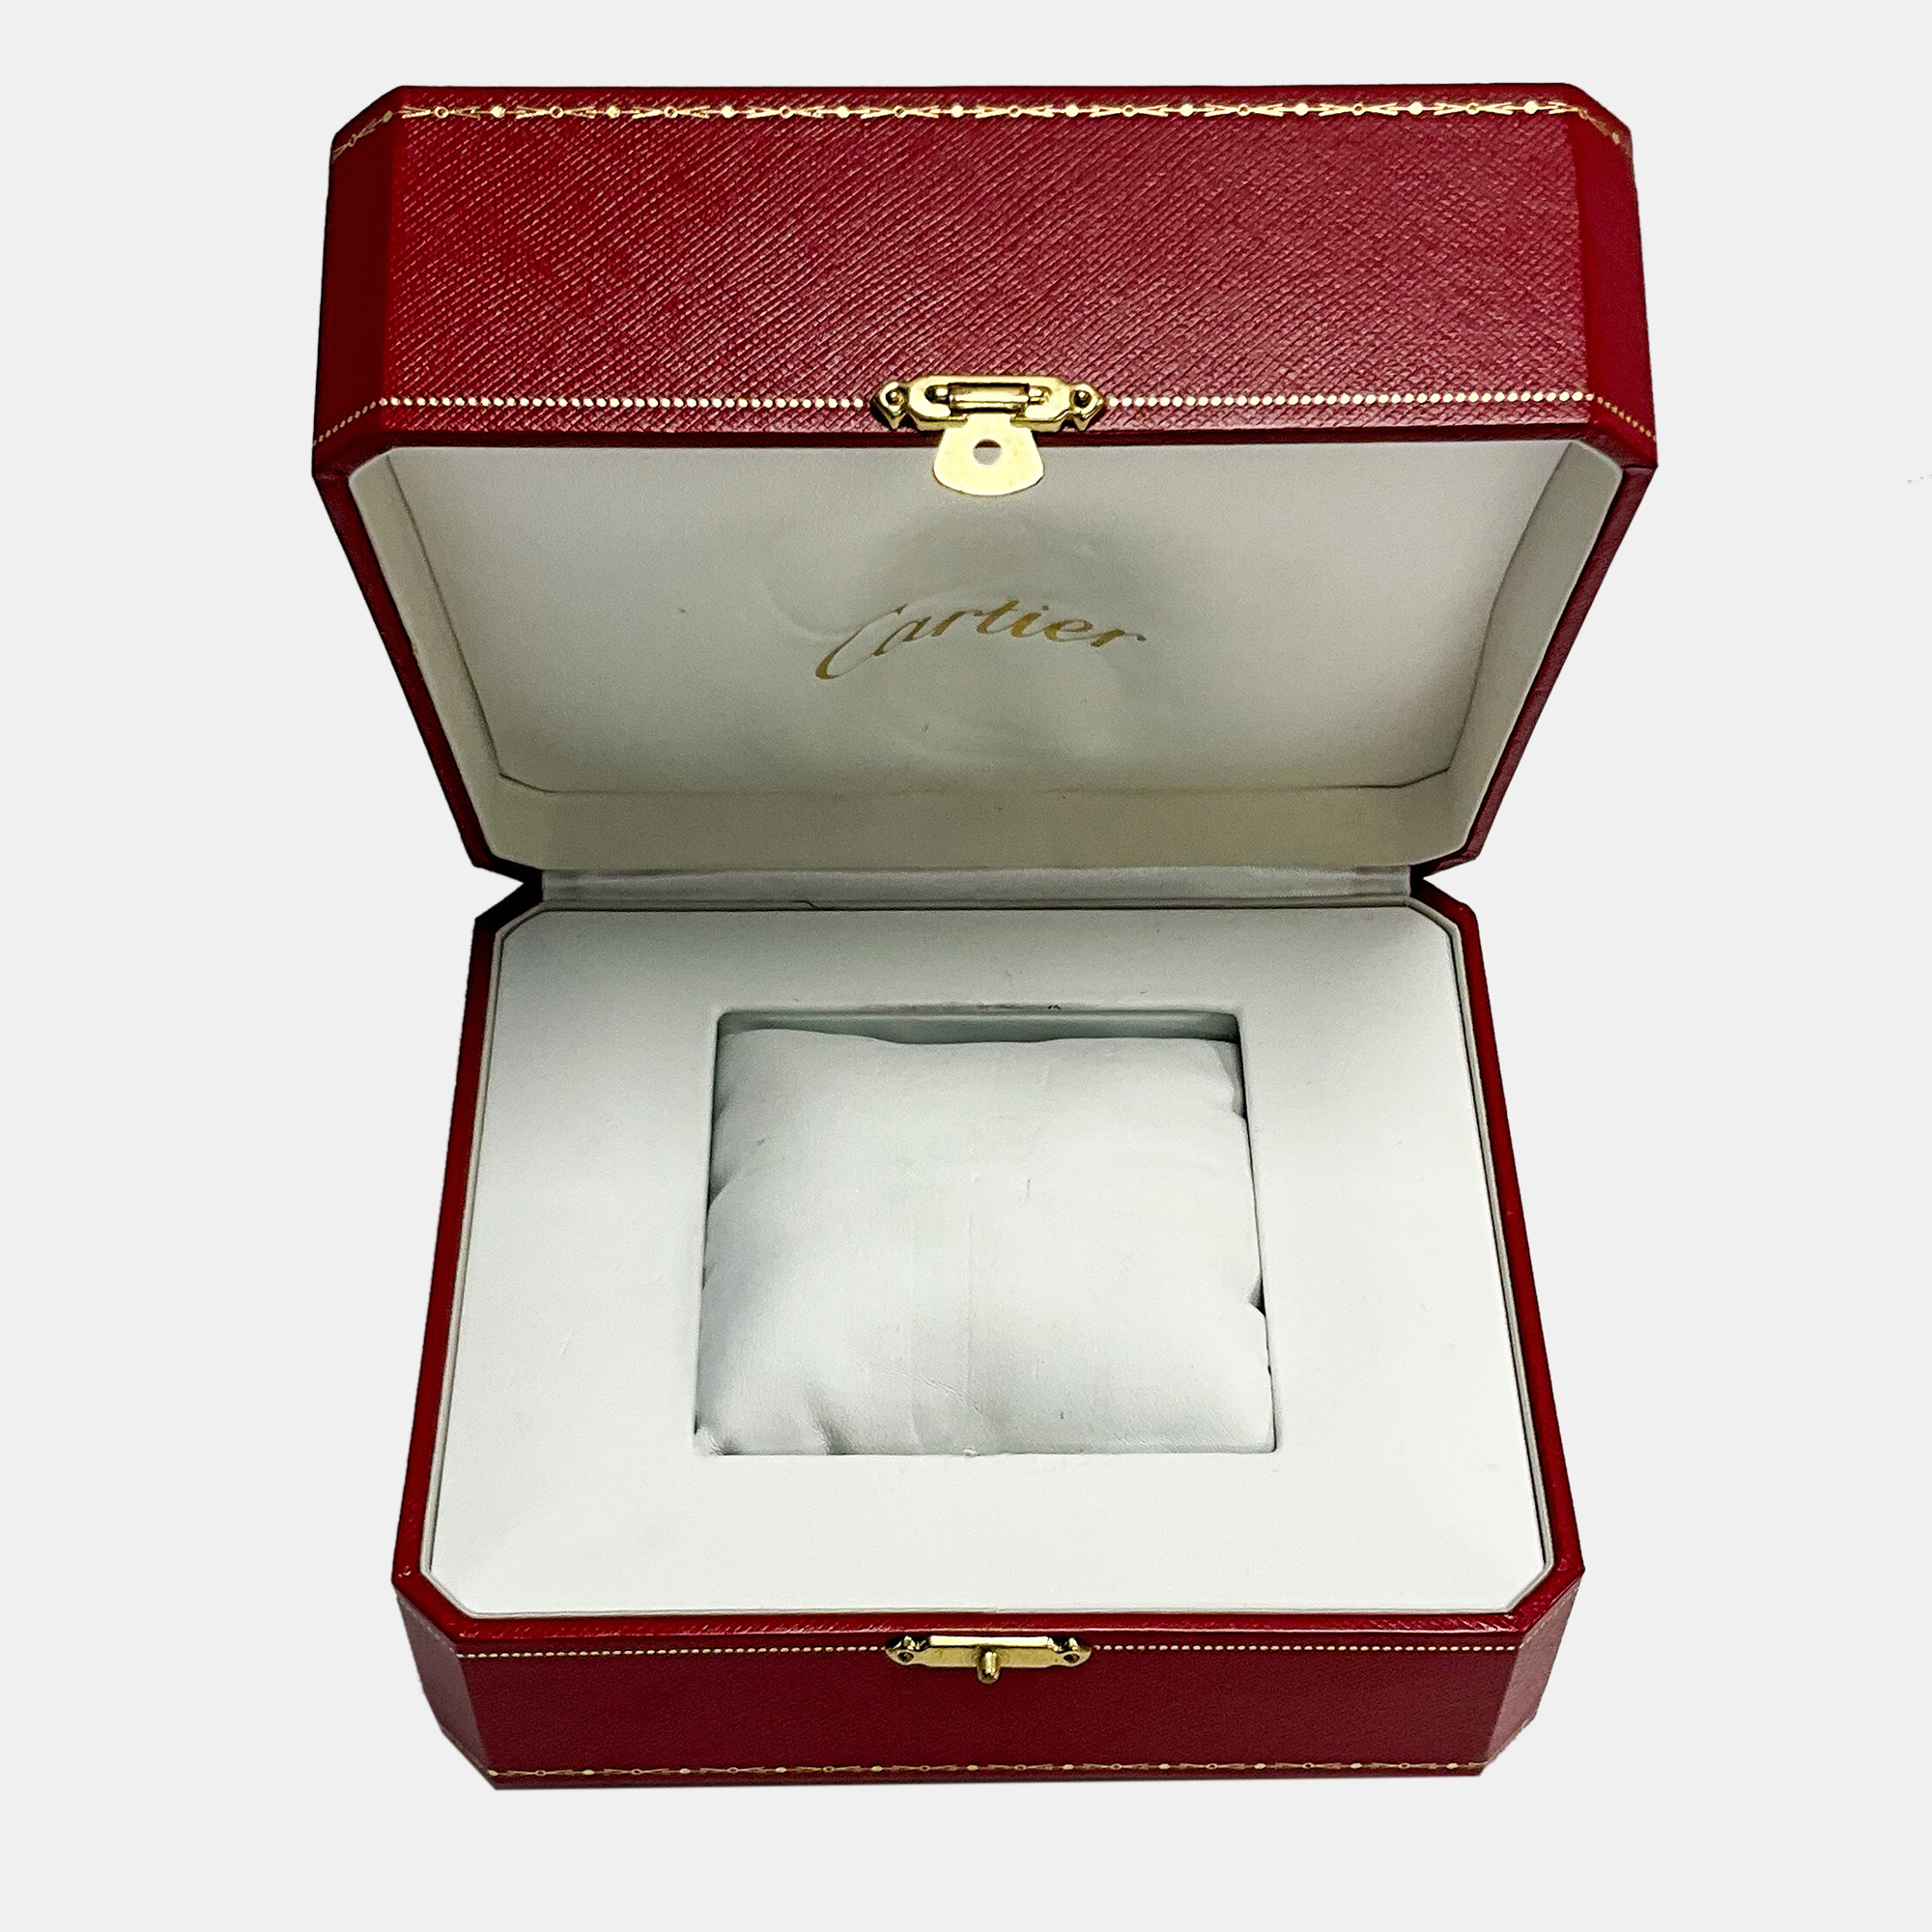 Cartier Silver 18k Rose Gold Pasha De Cartier W3019051 Automatic Men's Wristwatch 42 Mm